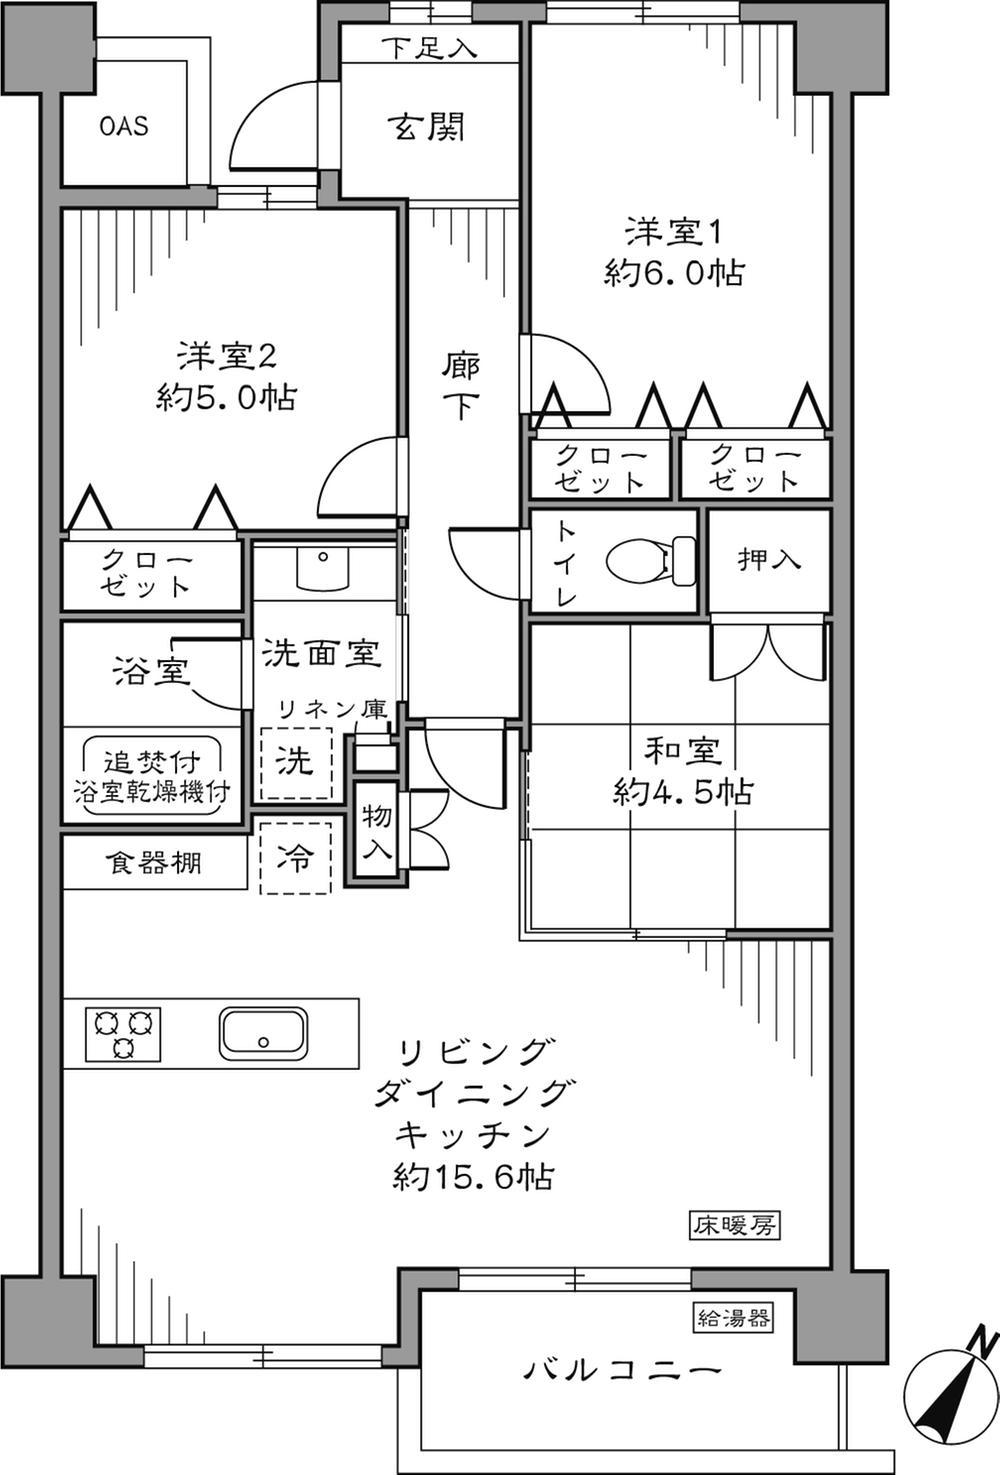 Floor plan. 3LDK 68.22 sq m